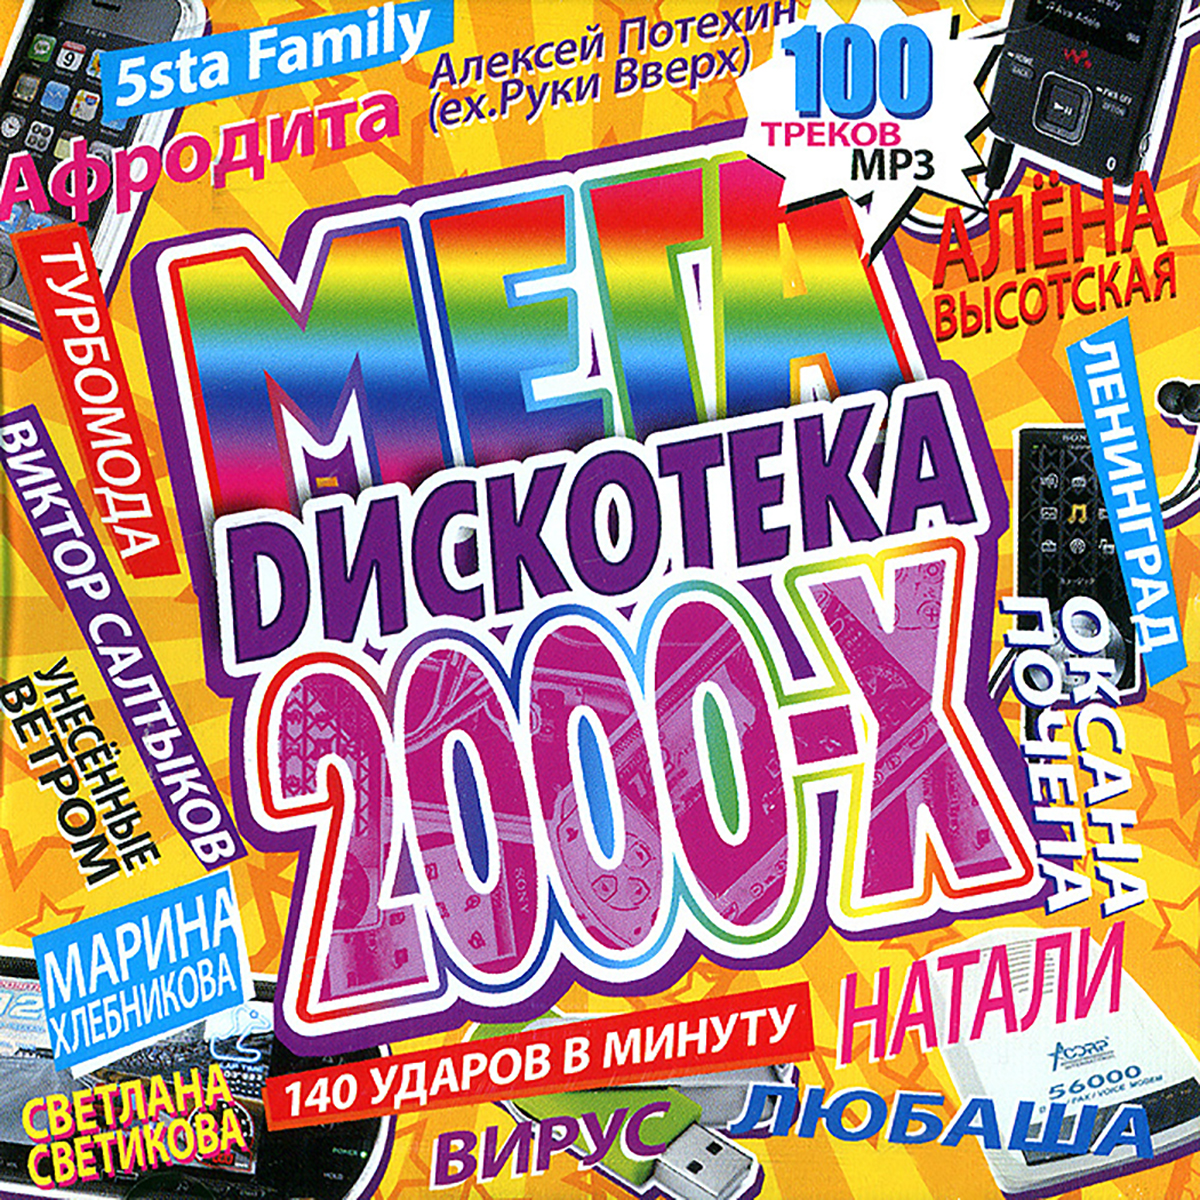 Хиты музыки 2000 года. Дискотека 2000-х. Дискотека 90-х. Дискотека 90-х обложка. Сборники 2000-х.